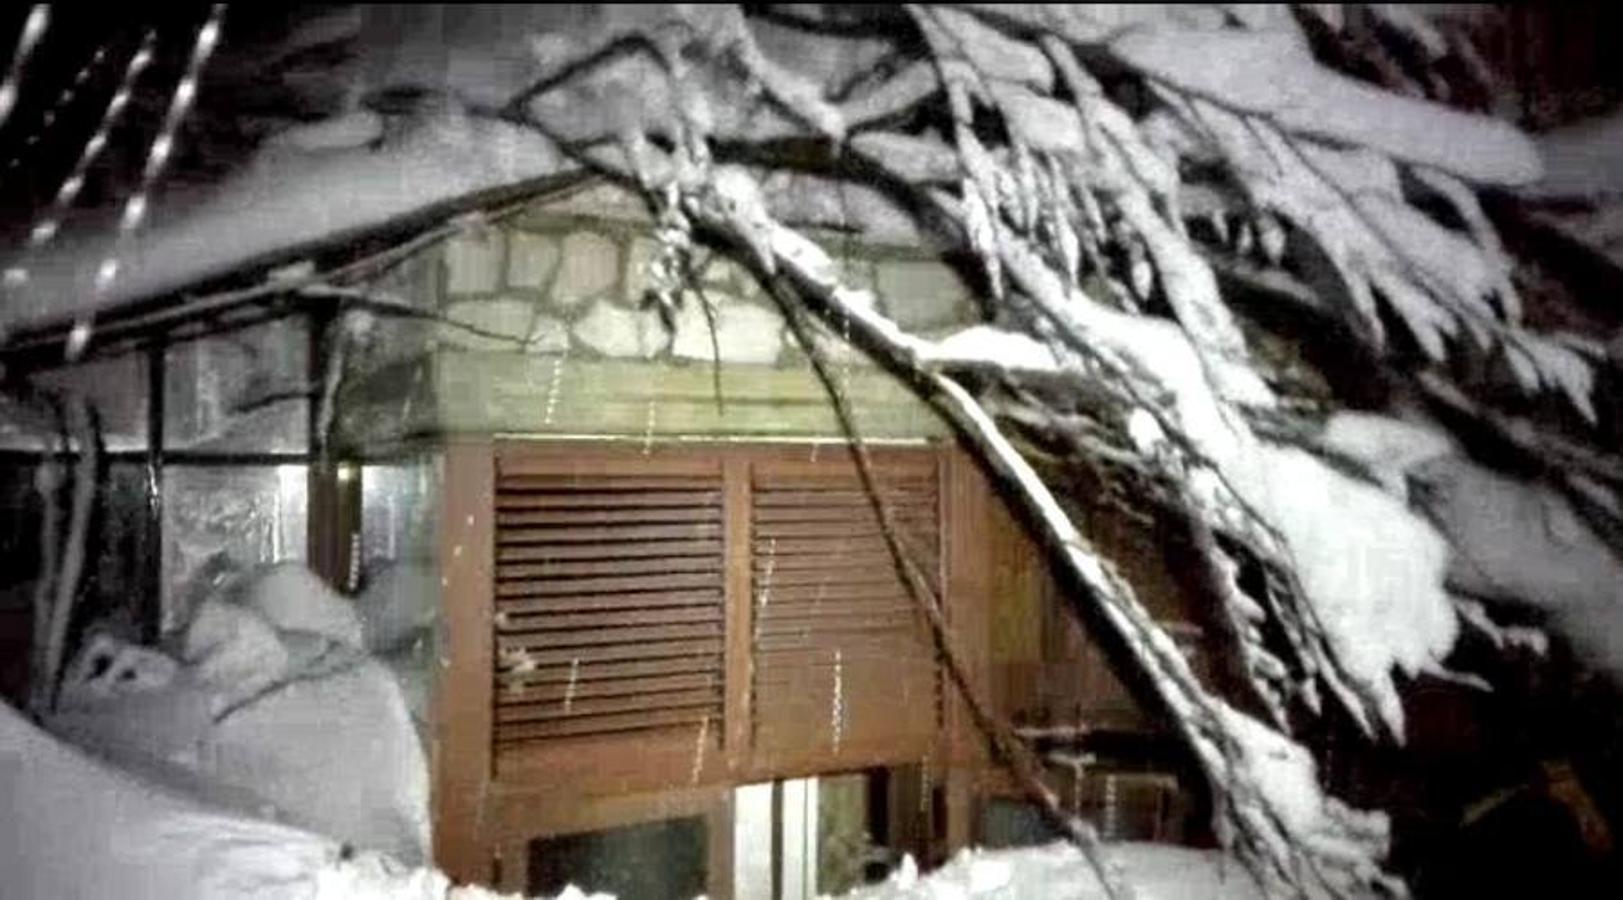 Los huéspedes del hotel sepultado por la nieve pidieron marcharse horas antes de la avalancha